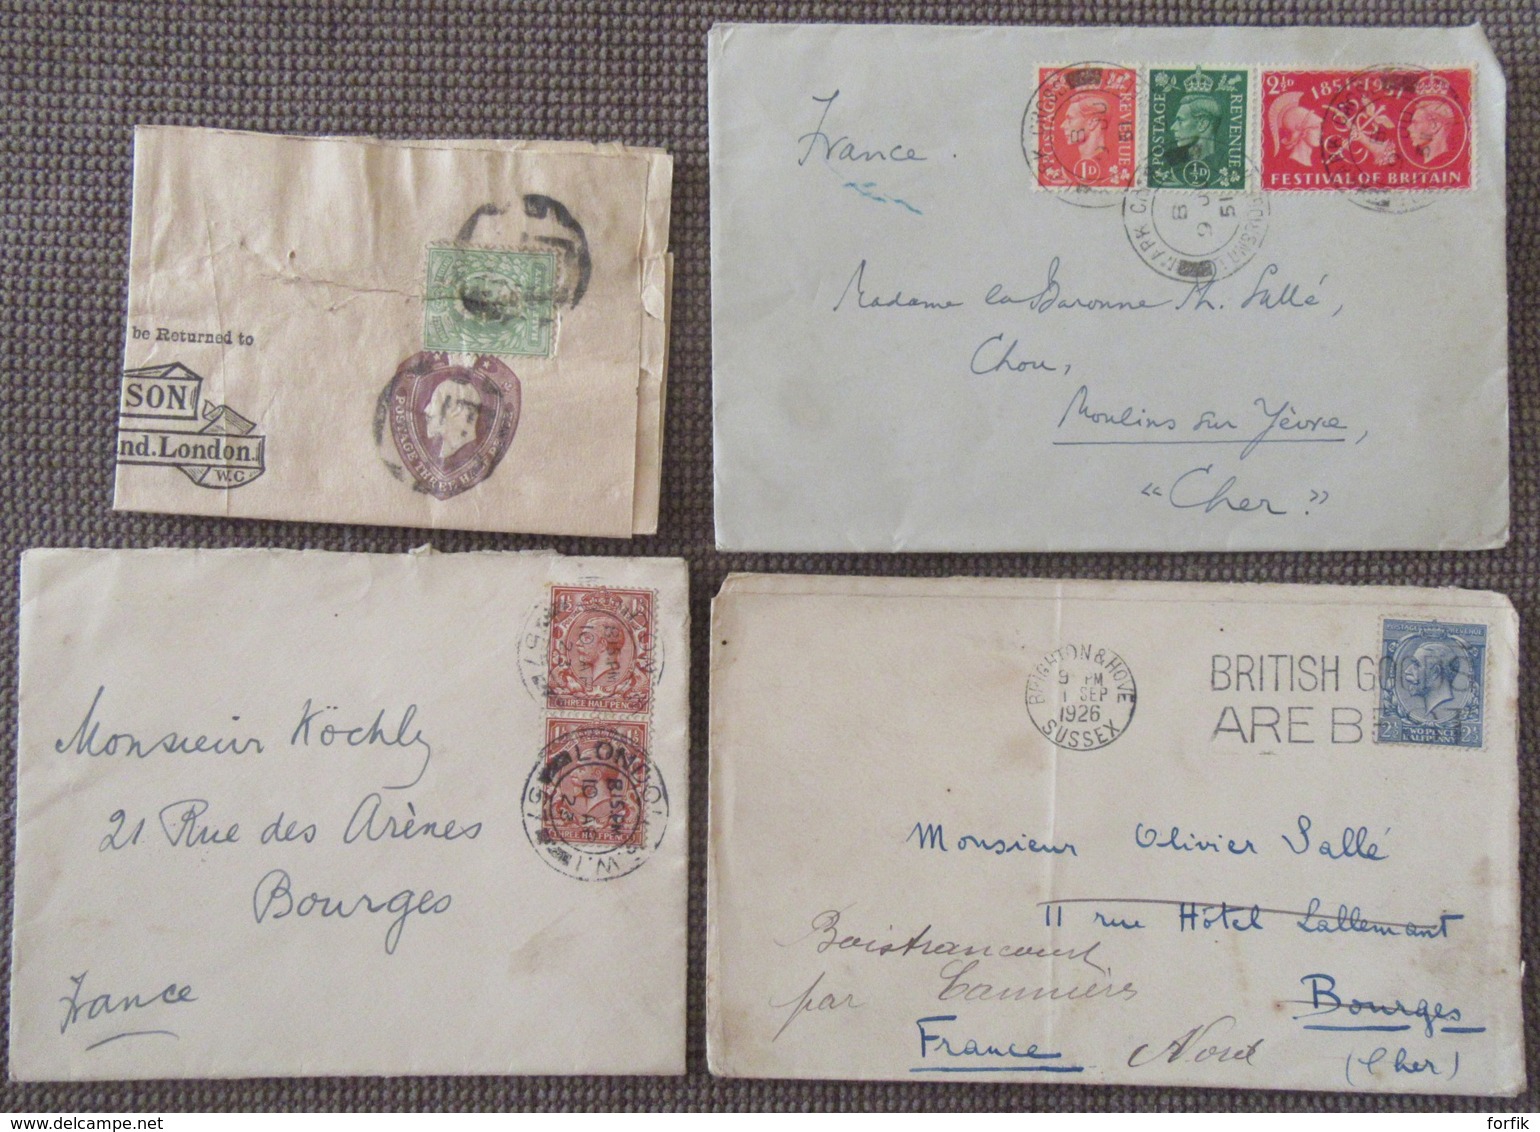 Grande-Bretagne - 20 Enveloppes dont entiers postaux, EMA, timbres, etc... - 1881 environ à 1954 - à étudier